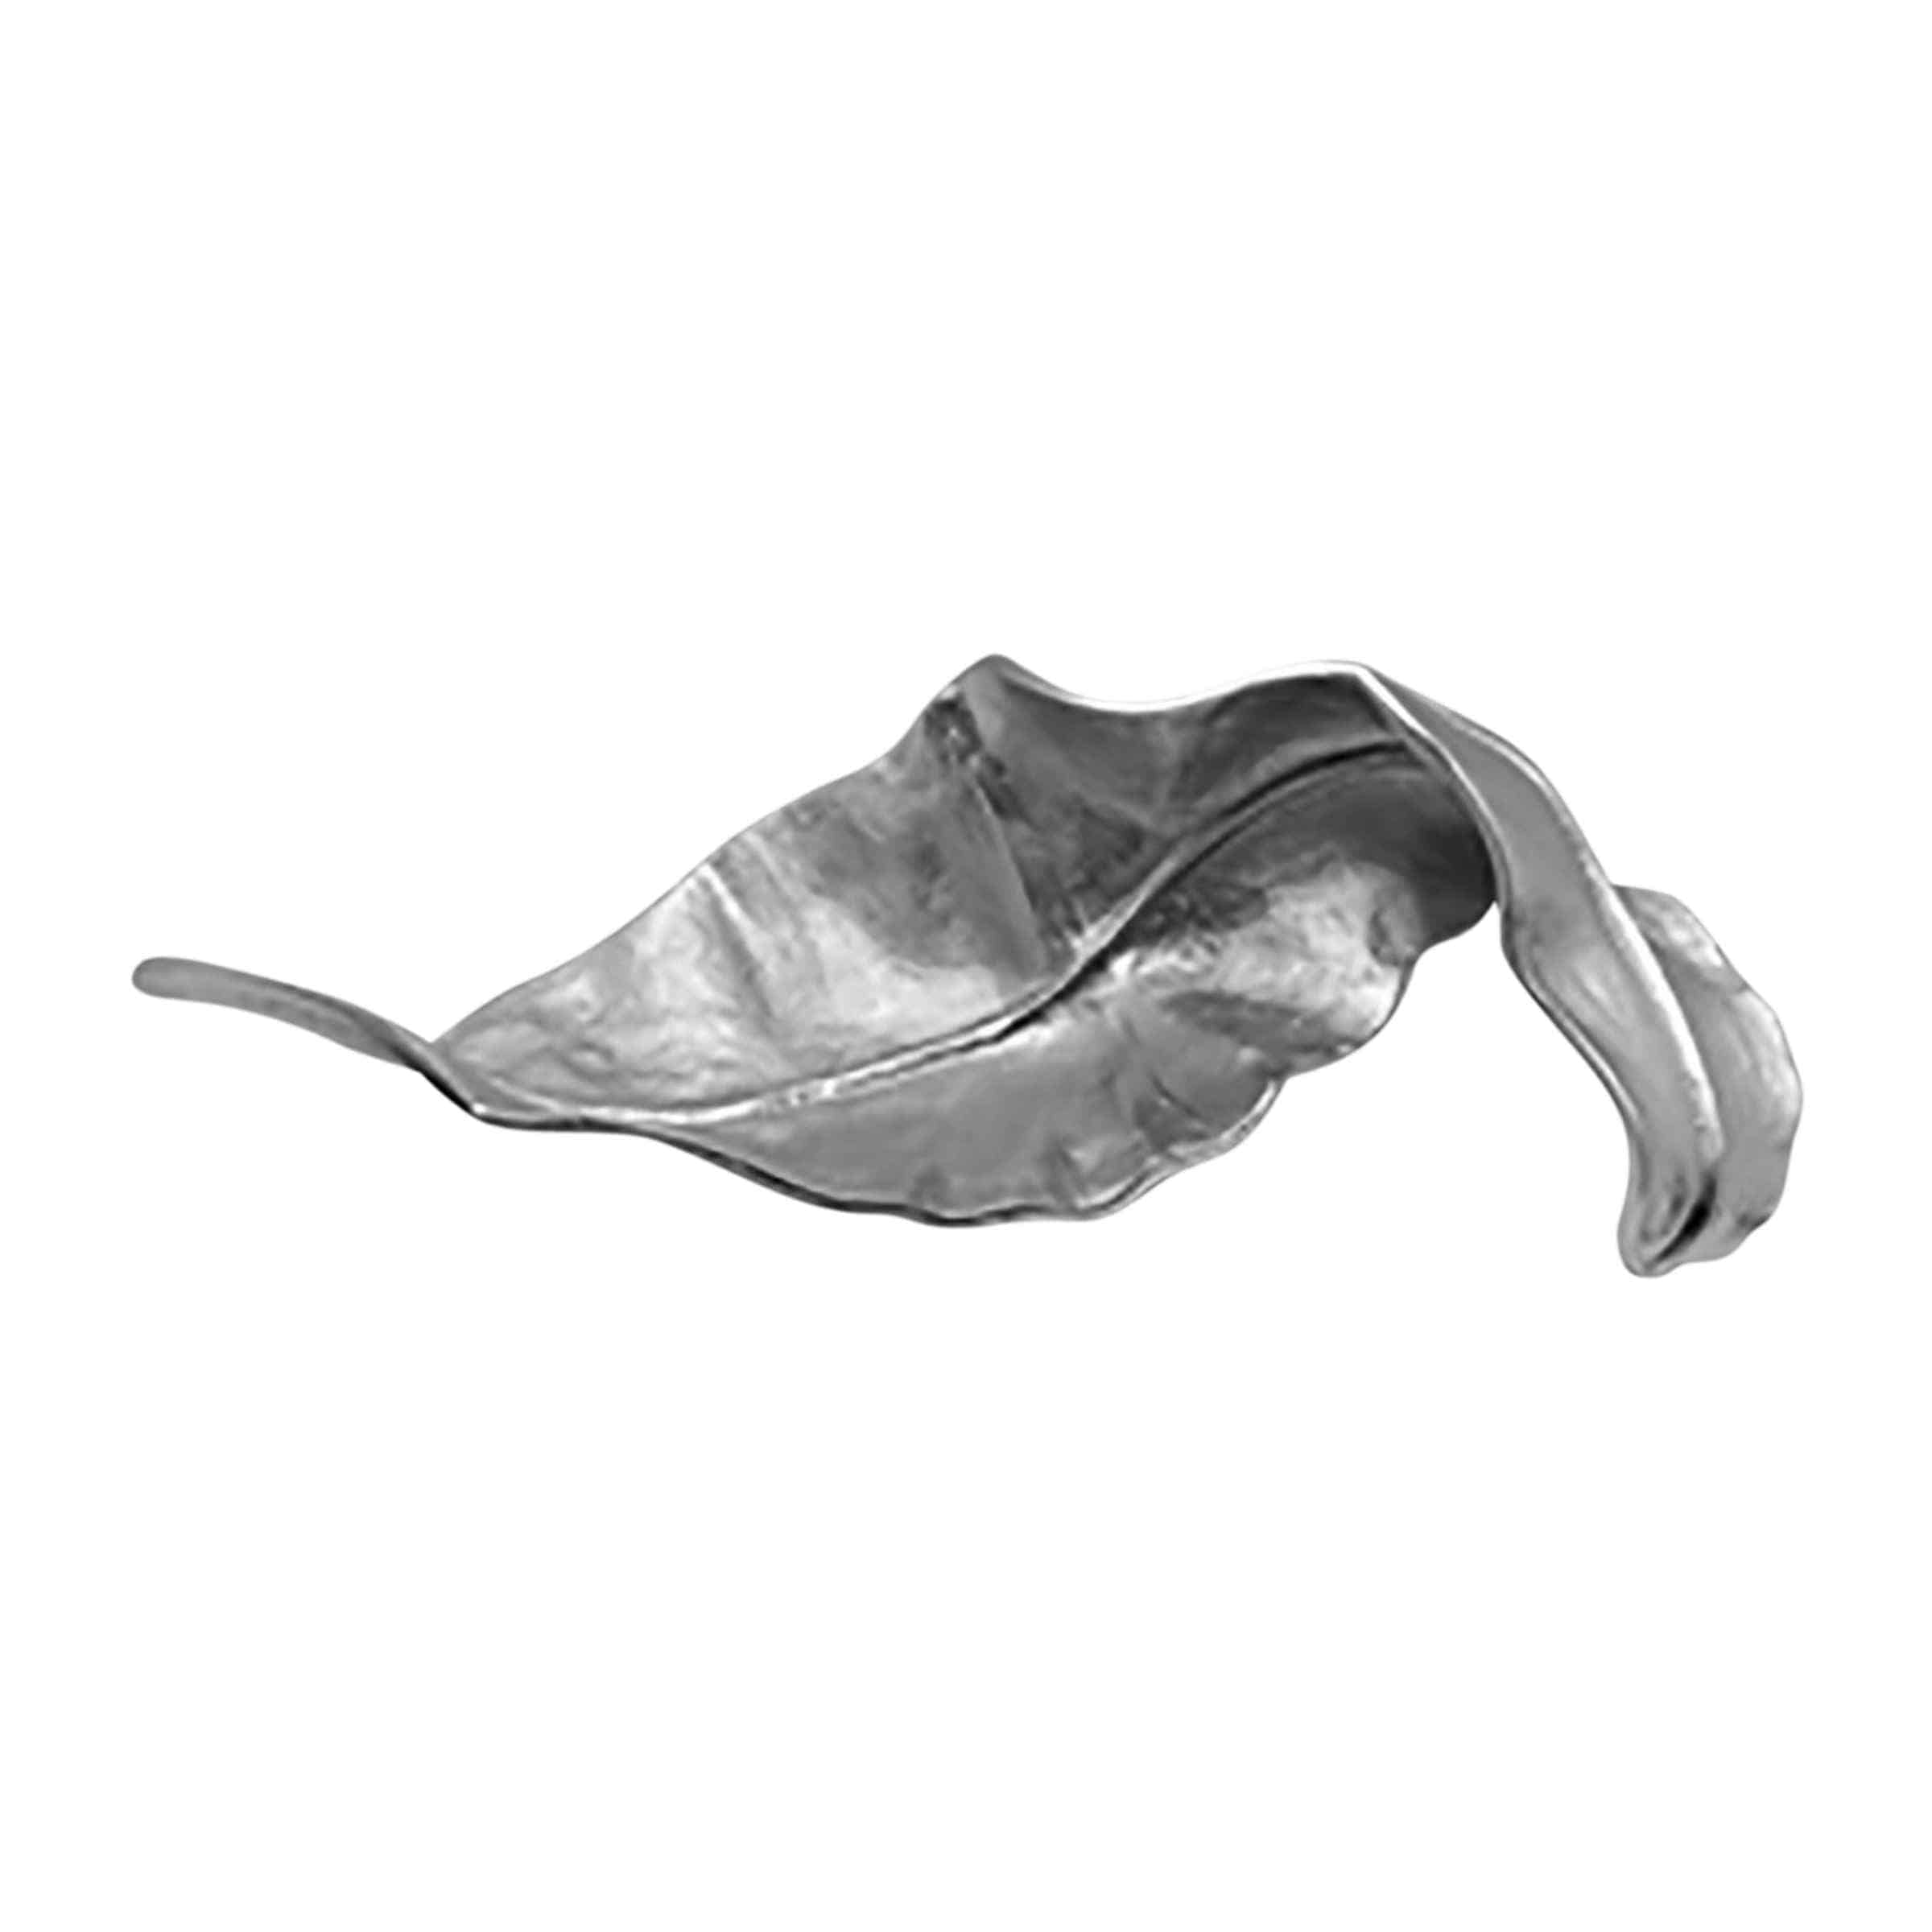 Curled Metal Leaf 55 Cm - Silver 16468-06 -  Home Decor Figurines | ورقه معدن مجعد 55 سم - فضي - ebarza Furniture UAE | Shop Modern Furniture in Abu Dhabi & Dubai - مفروشات ايبازرا في الامارات | تسوق اثاث عصري وديكورات مميزة في دبي وابوظبي